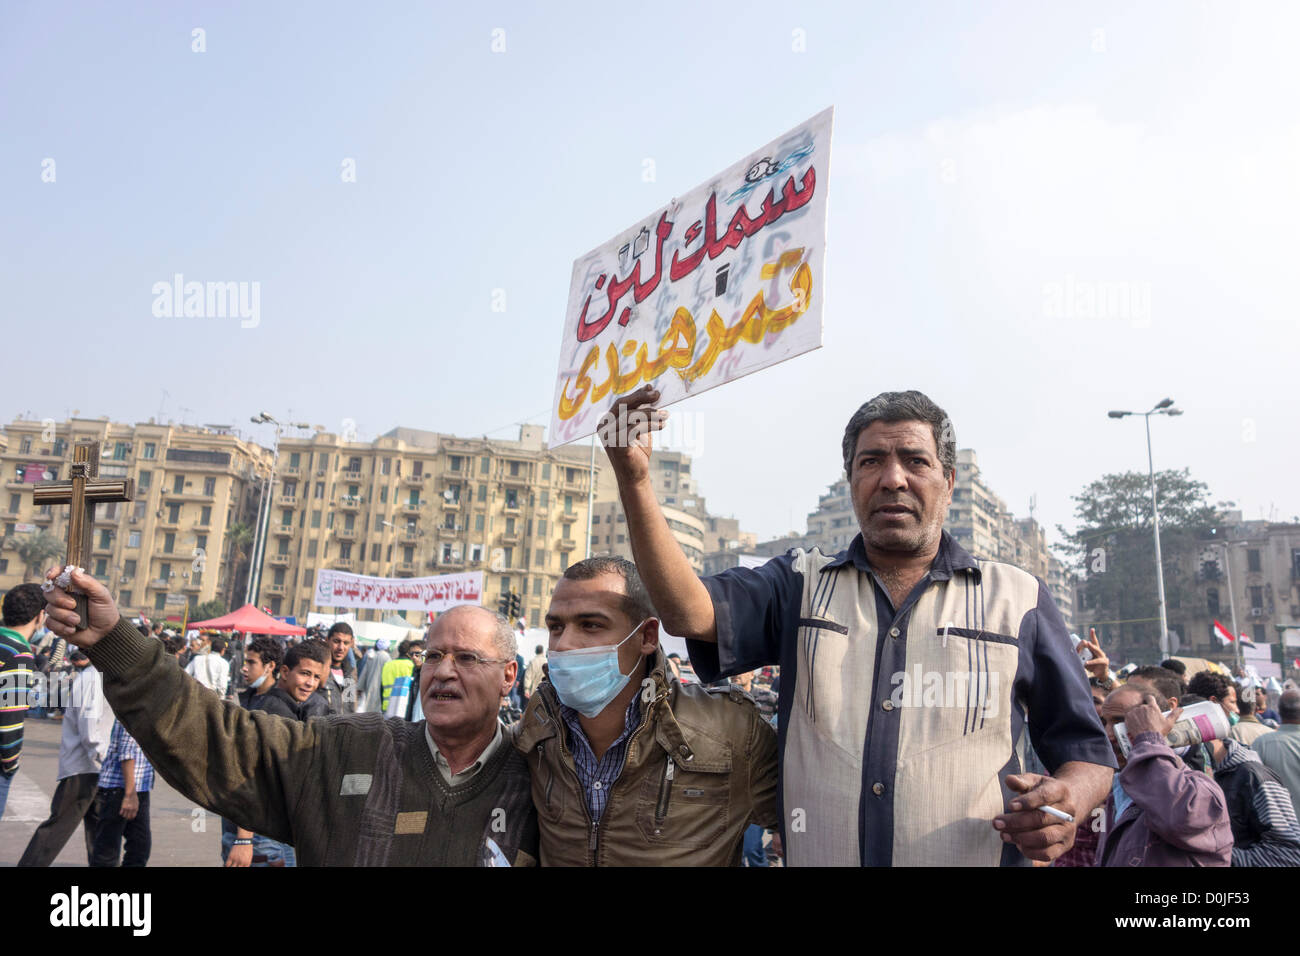 27. November 2012 Demonstranten protestieren gegen Präsident Morsi Annahme der absoluten Mächte auf dem Tahrir-Platz, Kairo, Ägypten hält man ein Schild in arabischer Sprache, das bedeutet "Dinge sind ein totales Durcheinander;" Eine andere hält ein Kreuz in Solidarität. Stockfoto